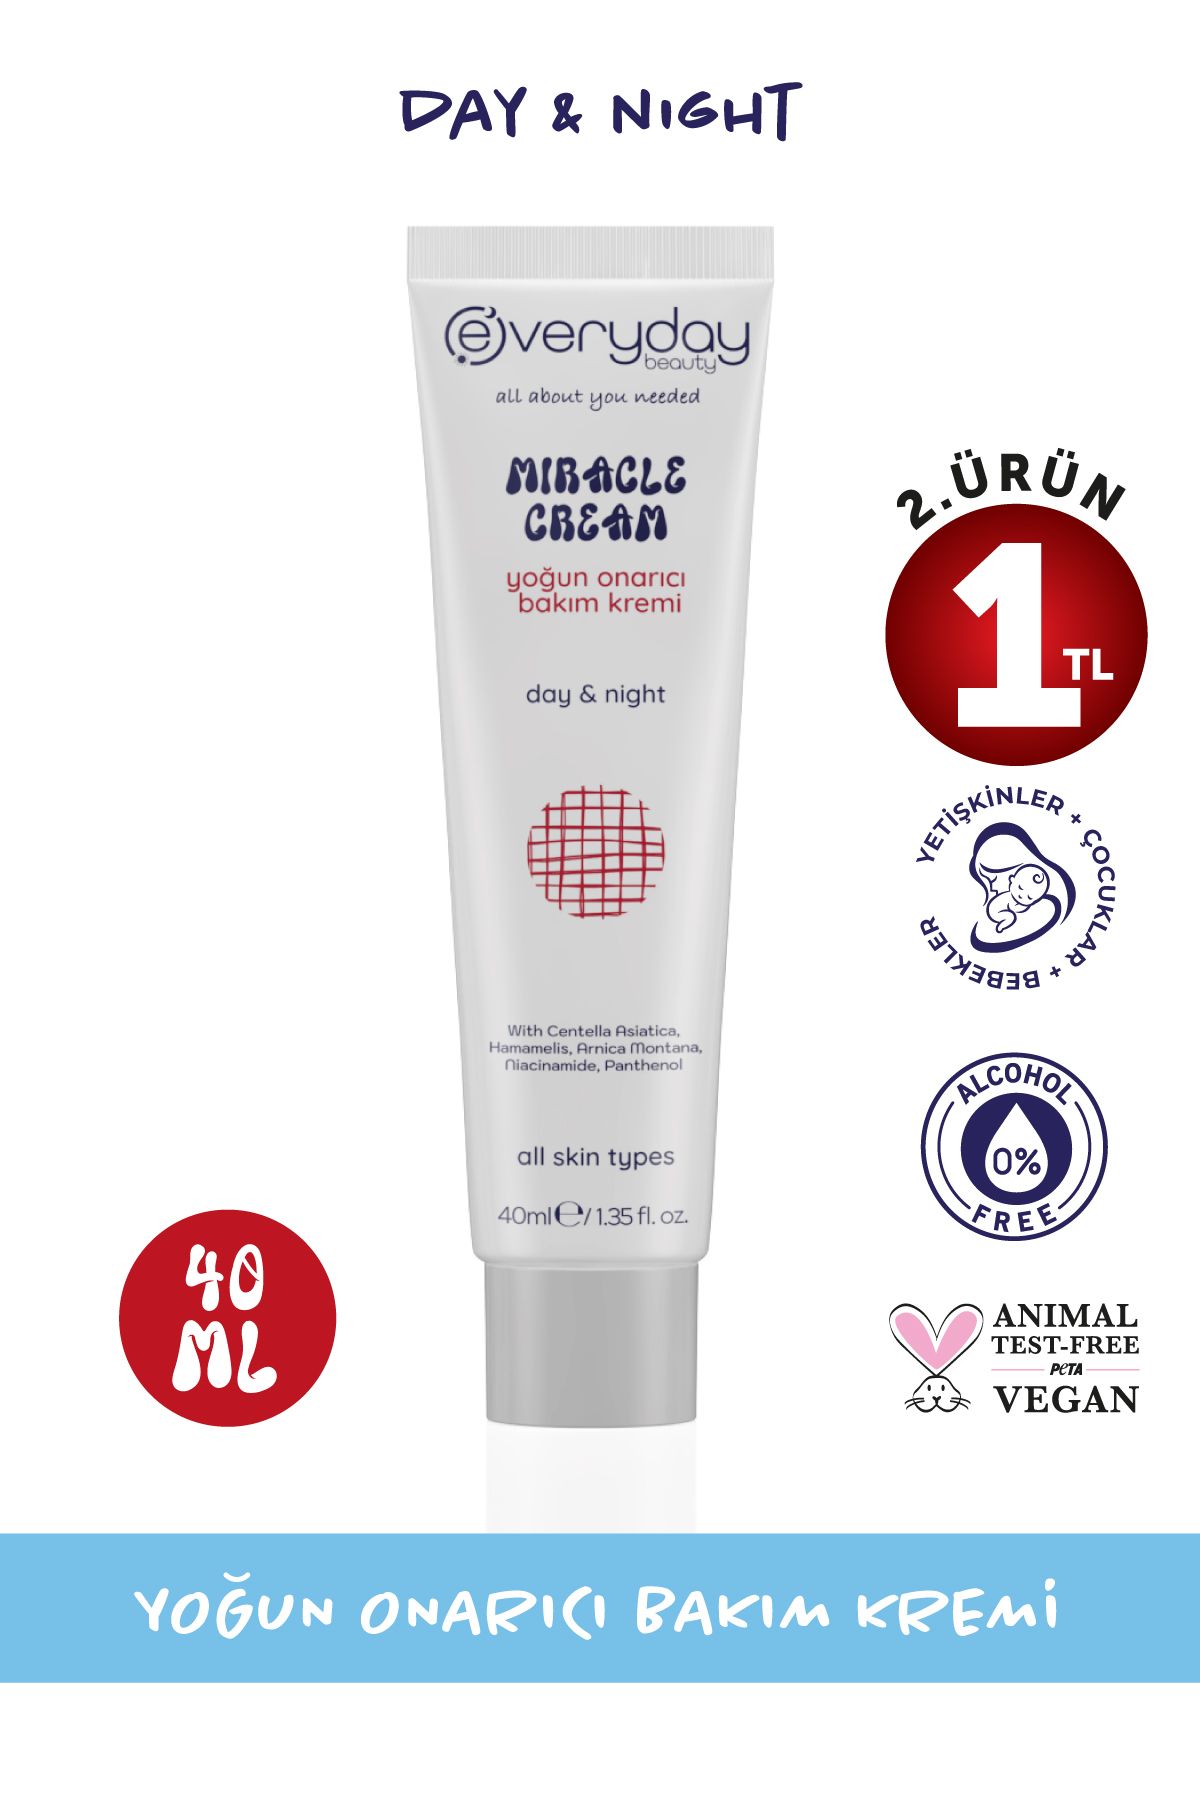 Everyday Beauty Miracle Cream Yoğun Onarıcı Mucizevi Bakım Kremi 40ml (centella, Hamamelis, Madecassol, Arnica)